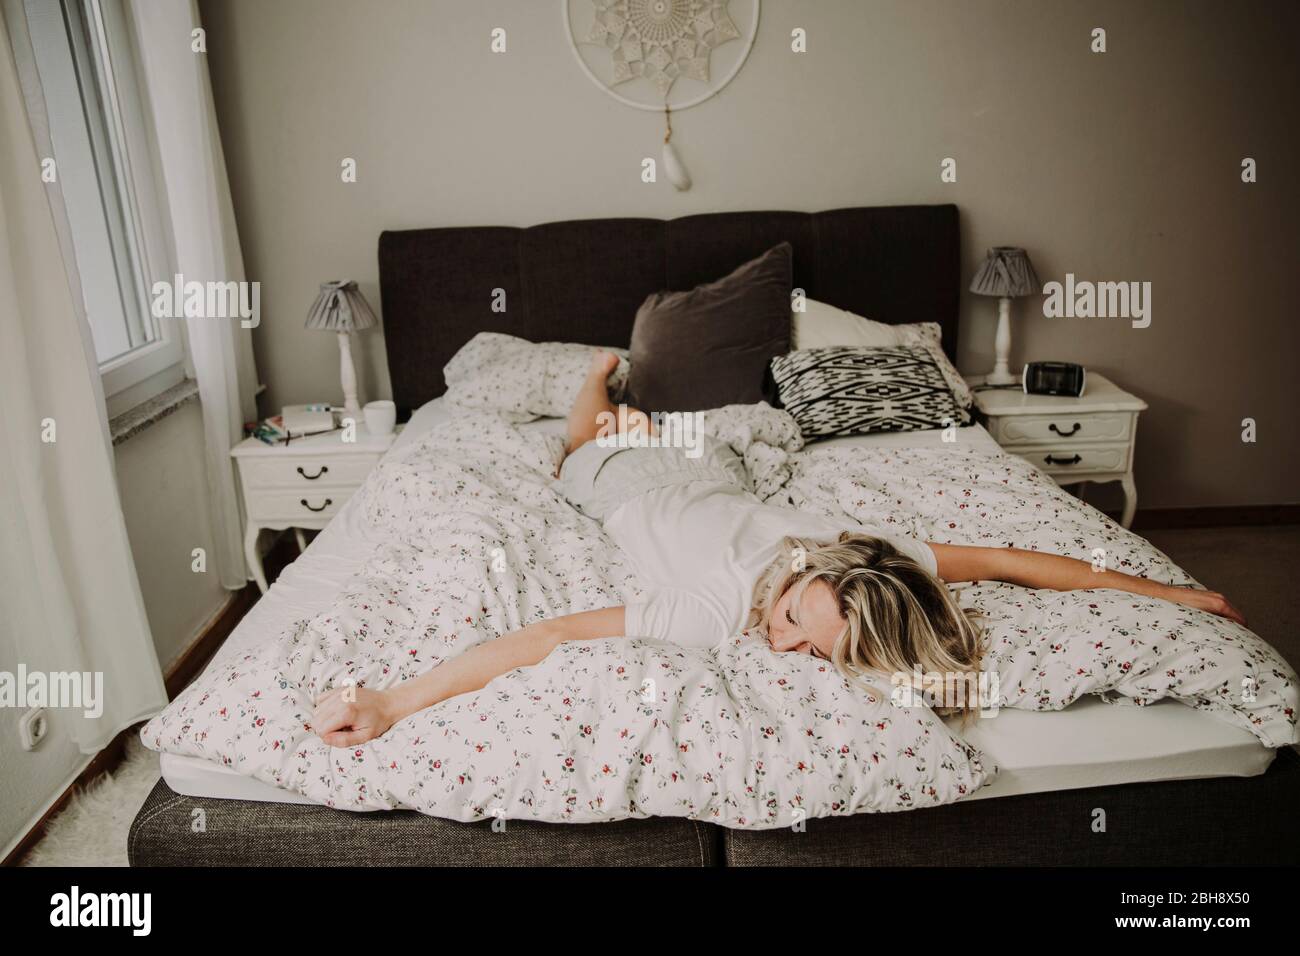 Frau liegt erschöpft im Bett Banque D'Images